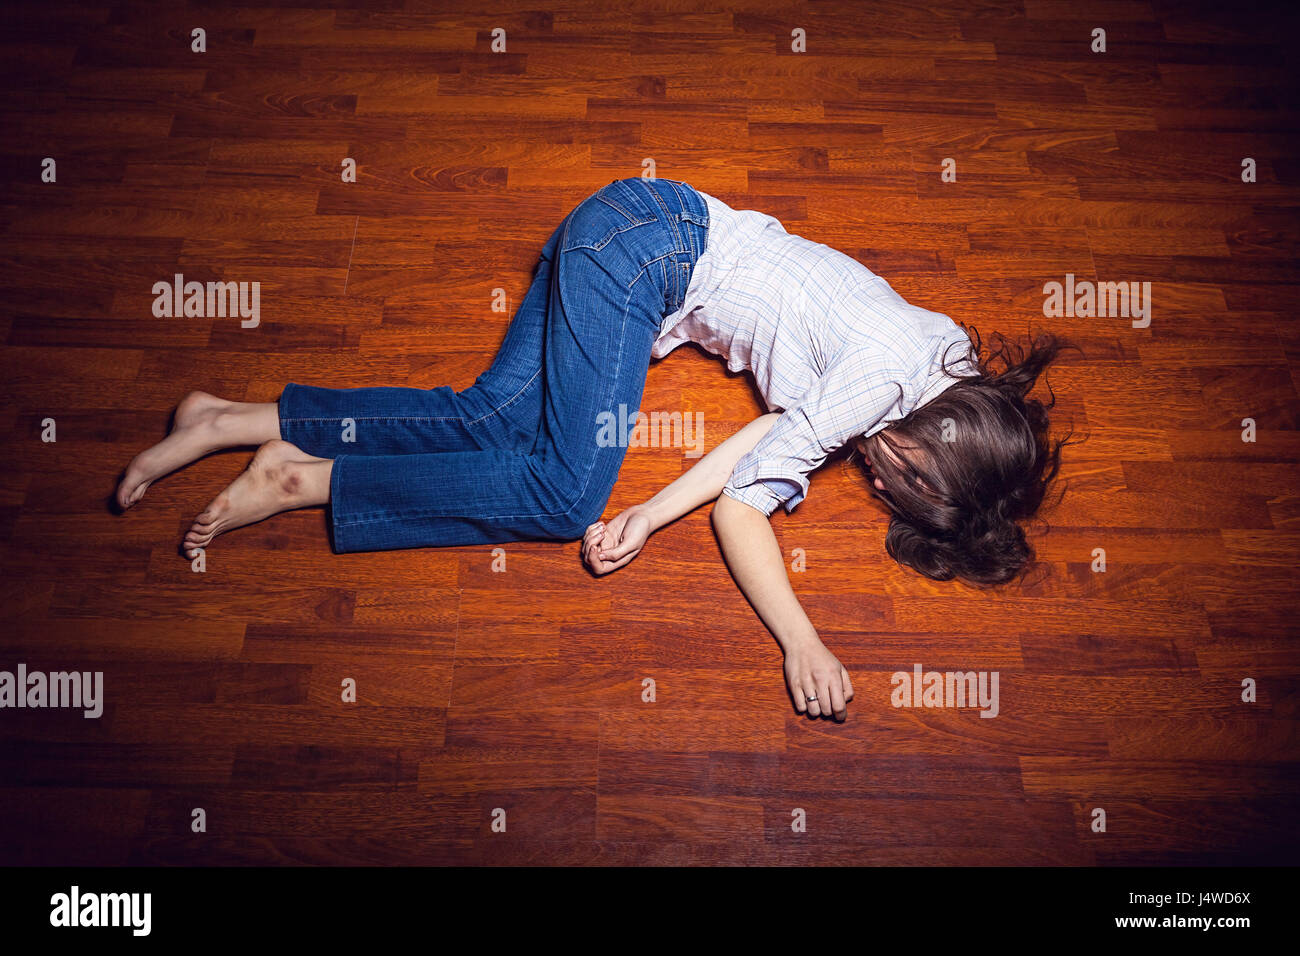 Mädchen Auf Dem Boden In Einem Leeren Raum Stockfotografie Alamy 